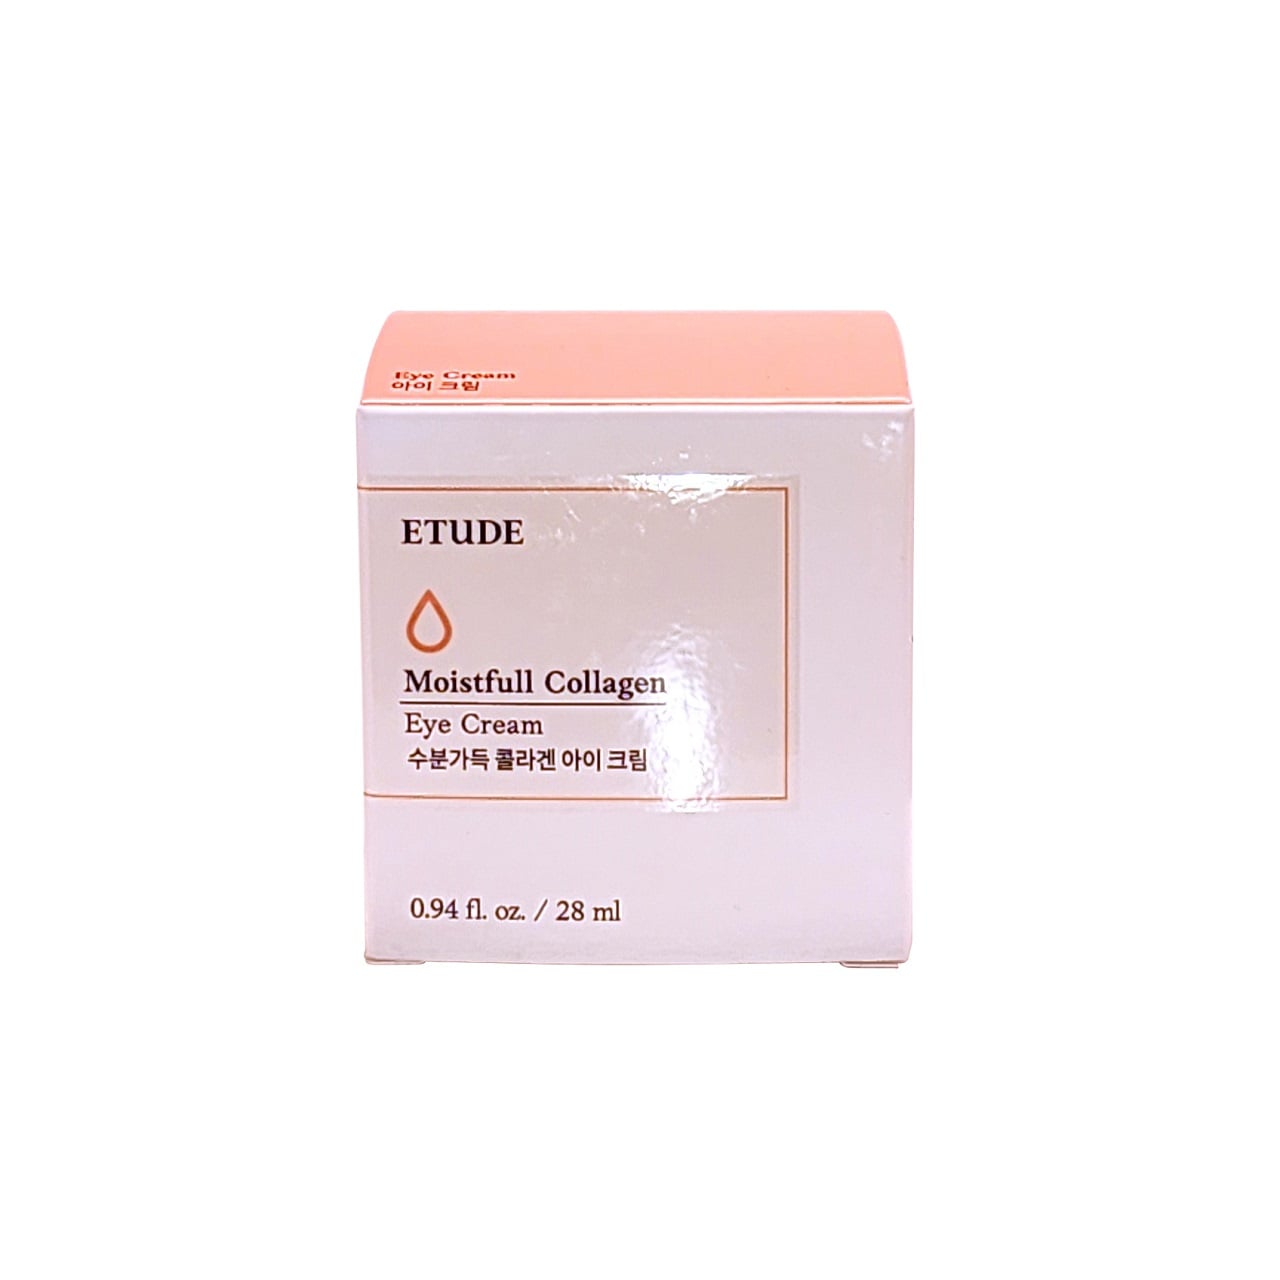 Product label for Etude House Moistfull Collagen Eye Cream (28 mL)